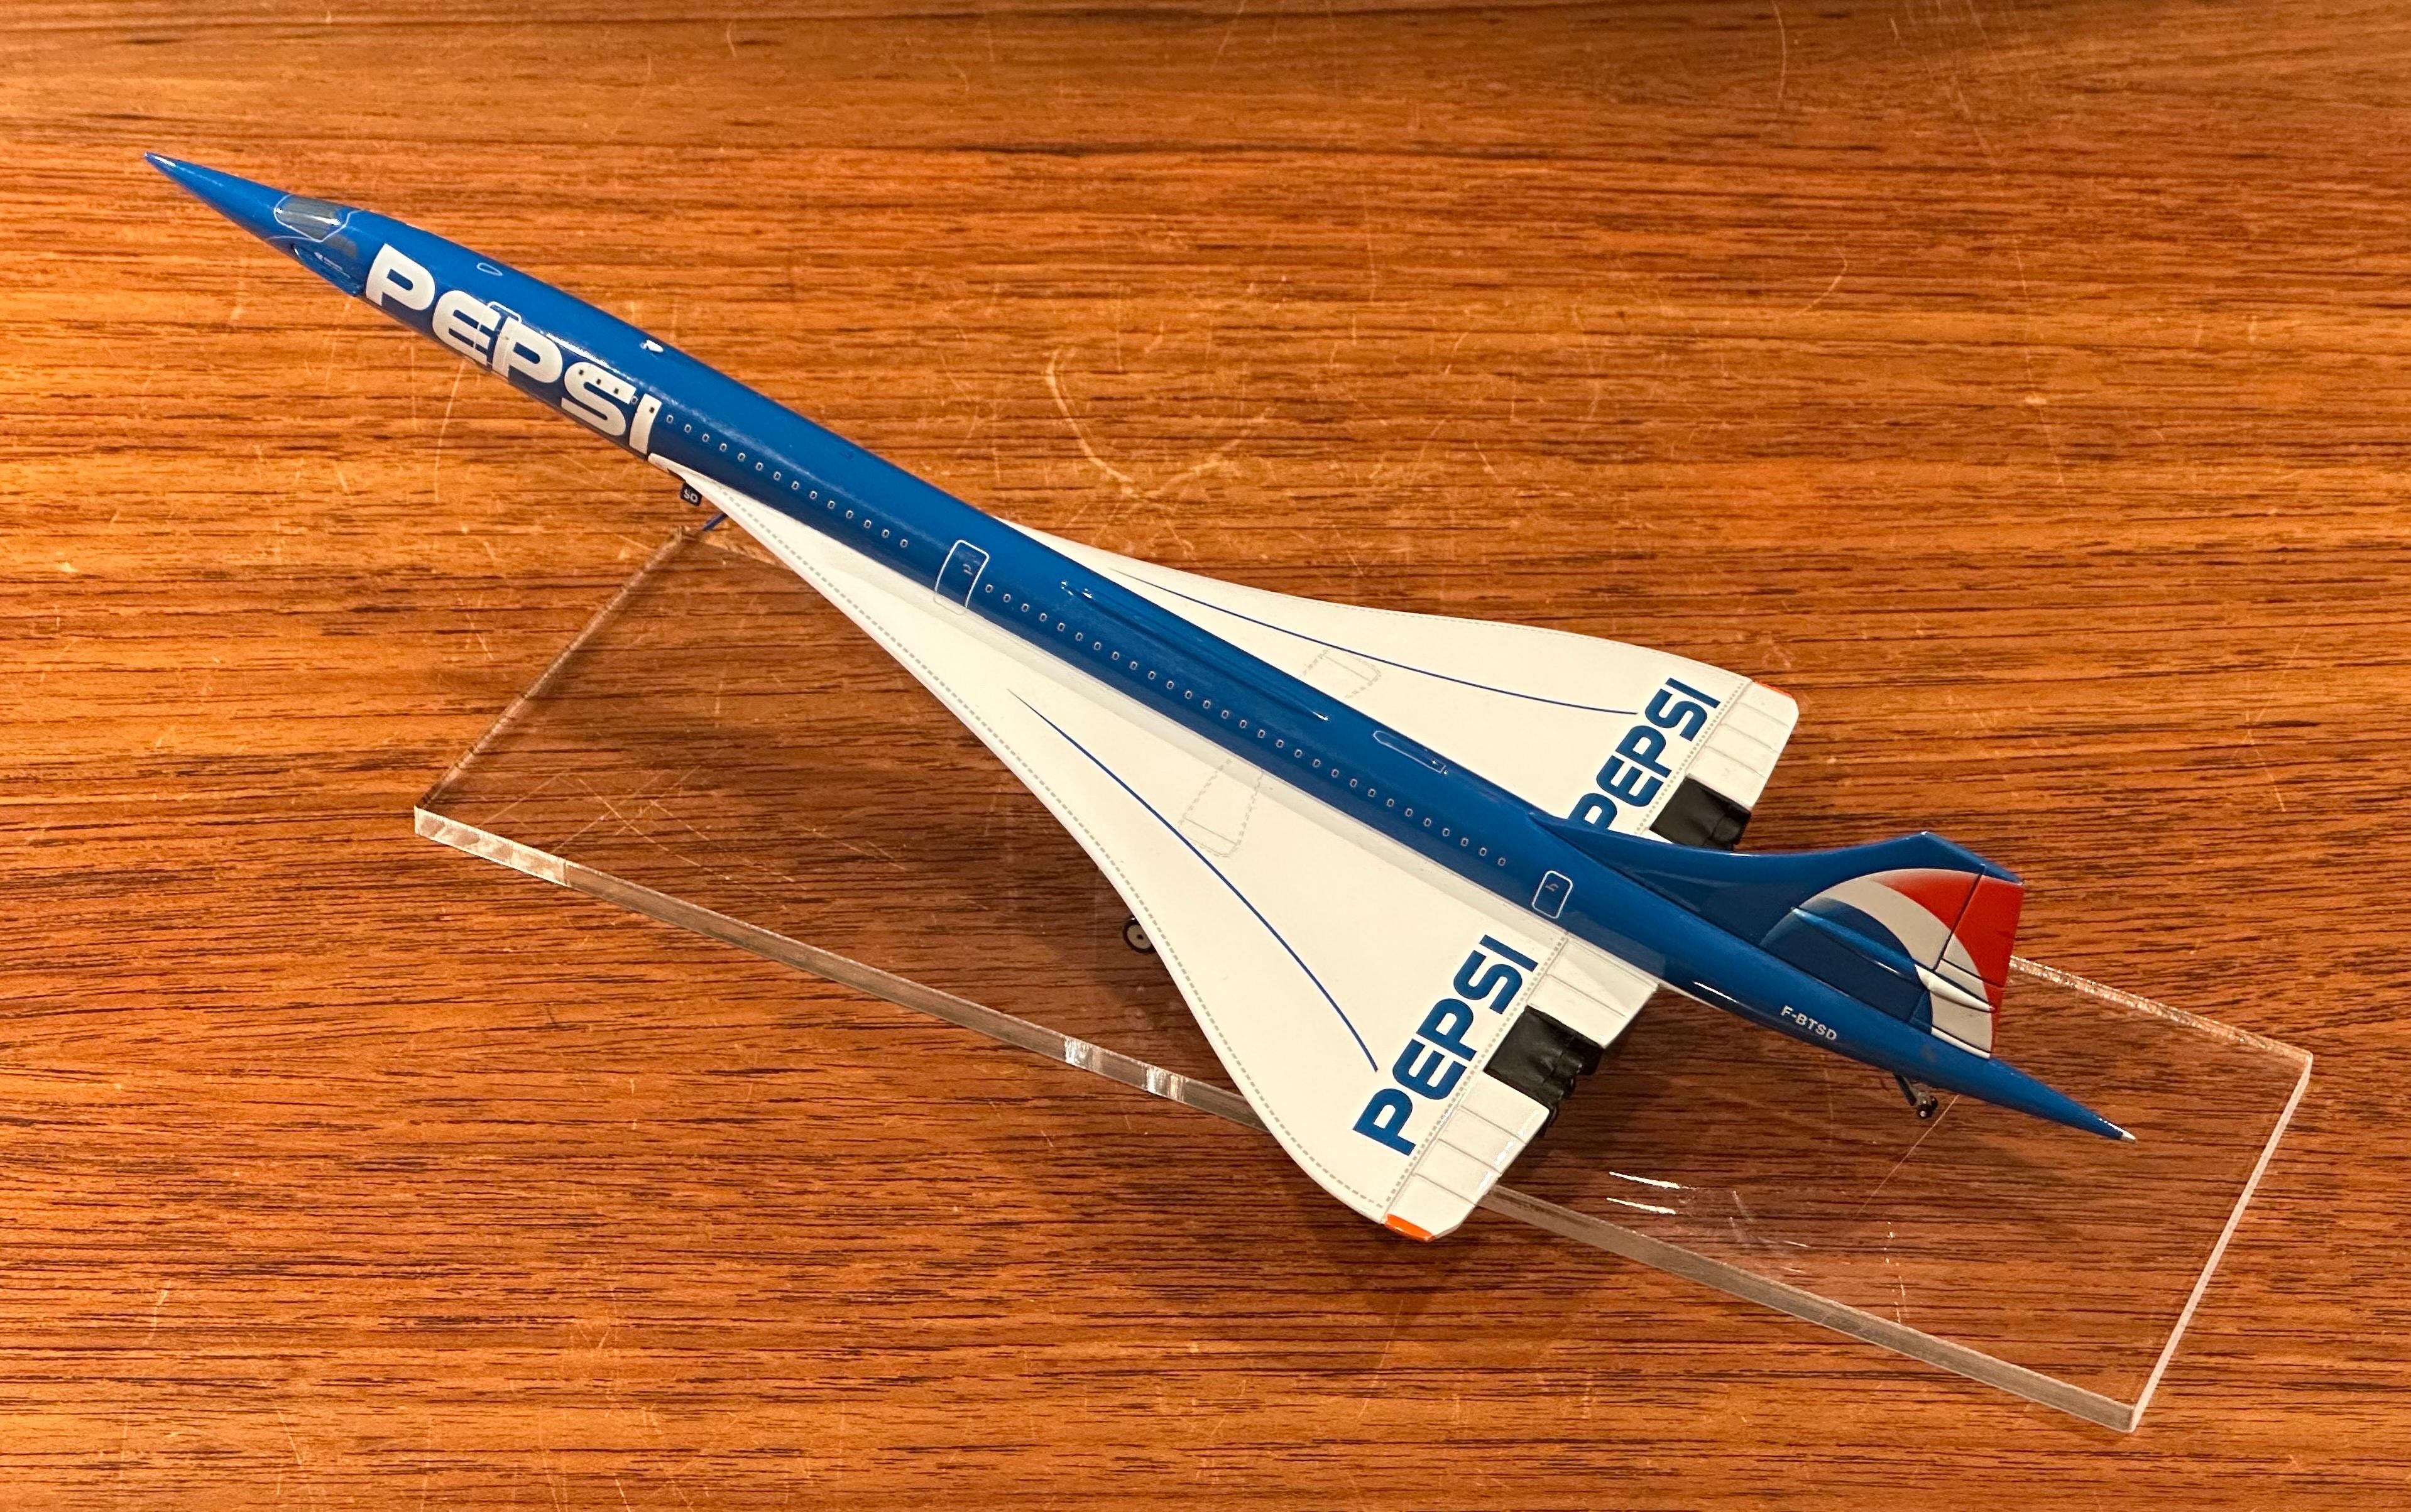 Une très belle maquette de bureau du Concorde, logo Pepsi, sur base en lucite, vers la fin des années 1990.  Le modèle mesure 5,5